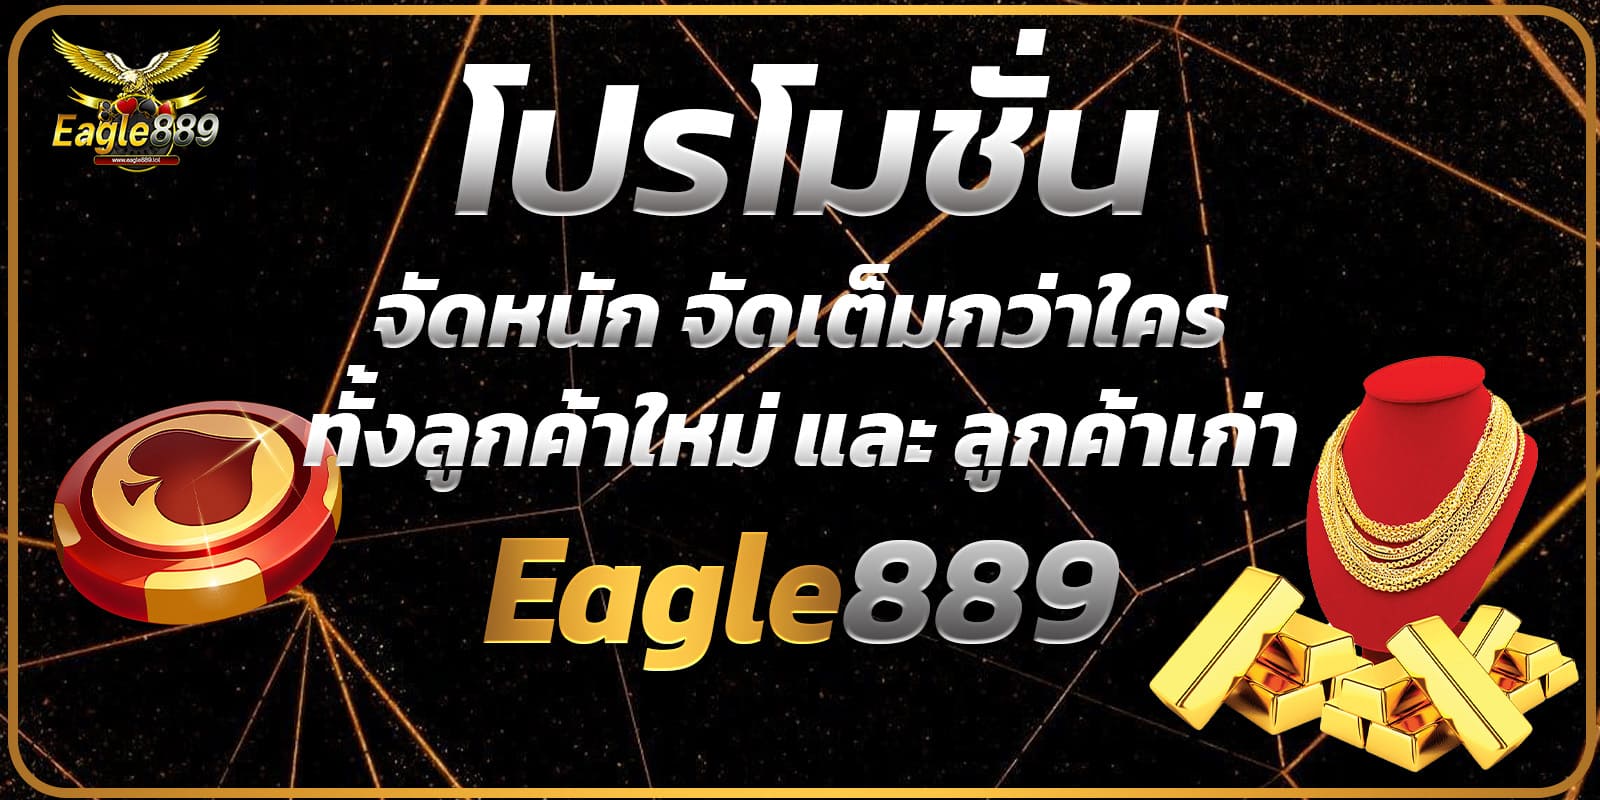 EAGLE889